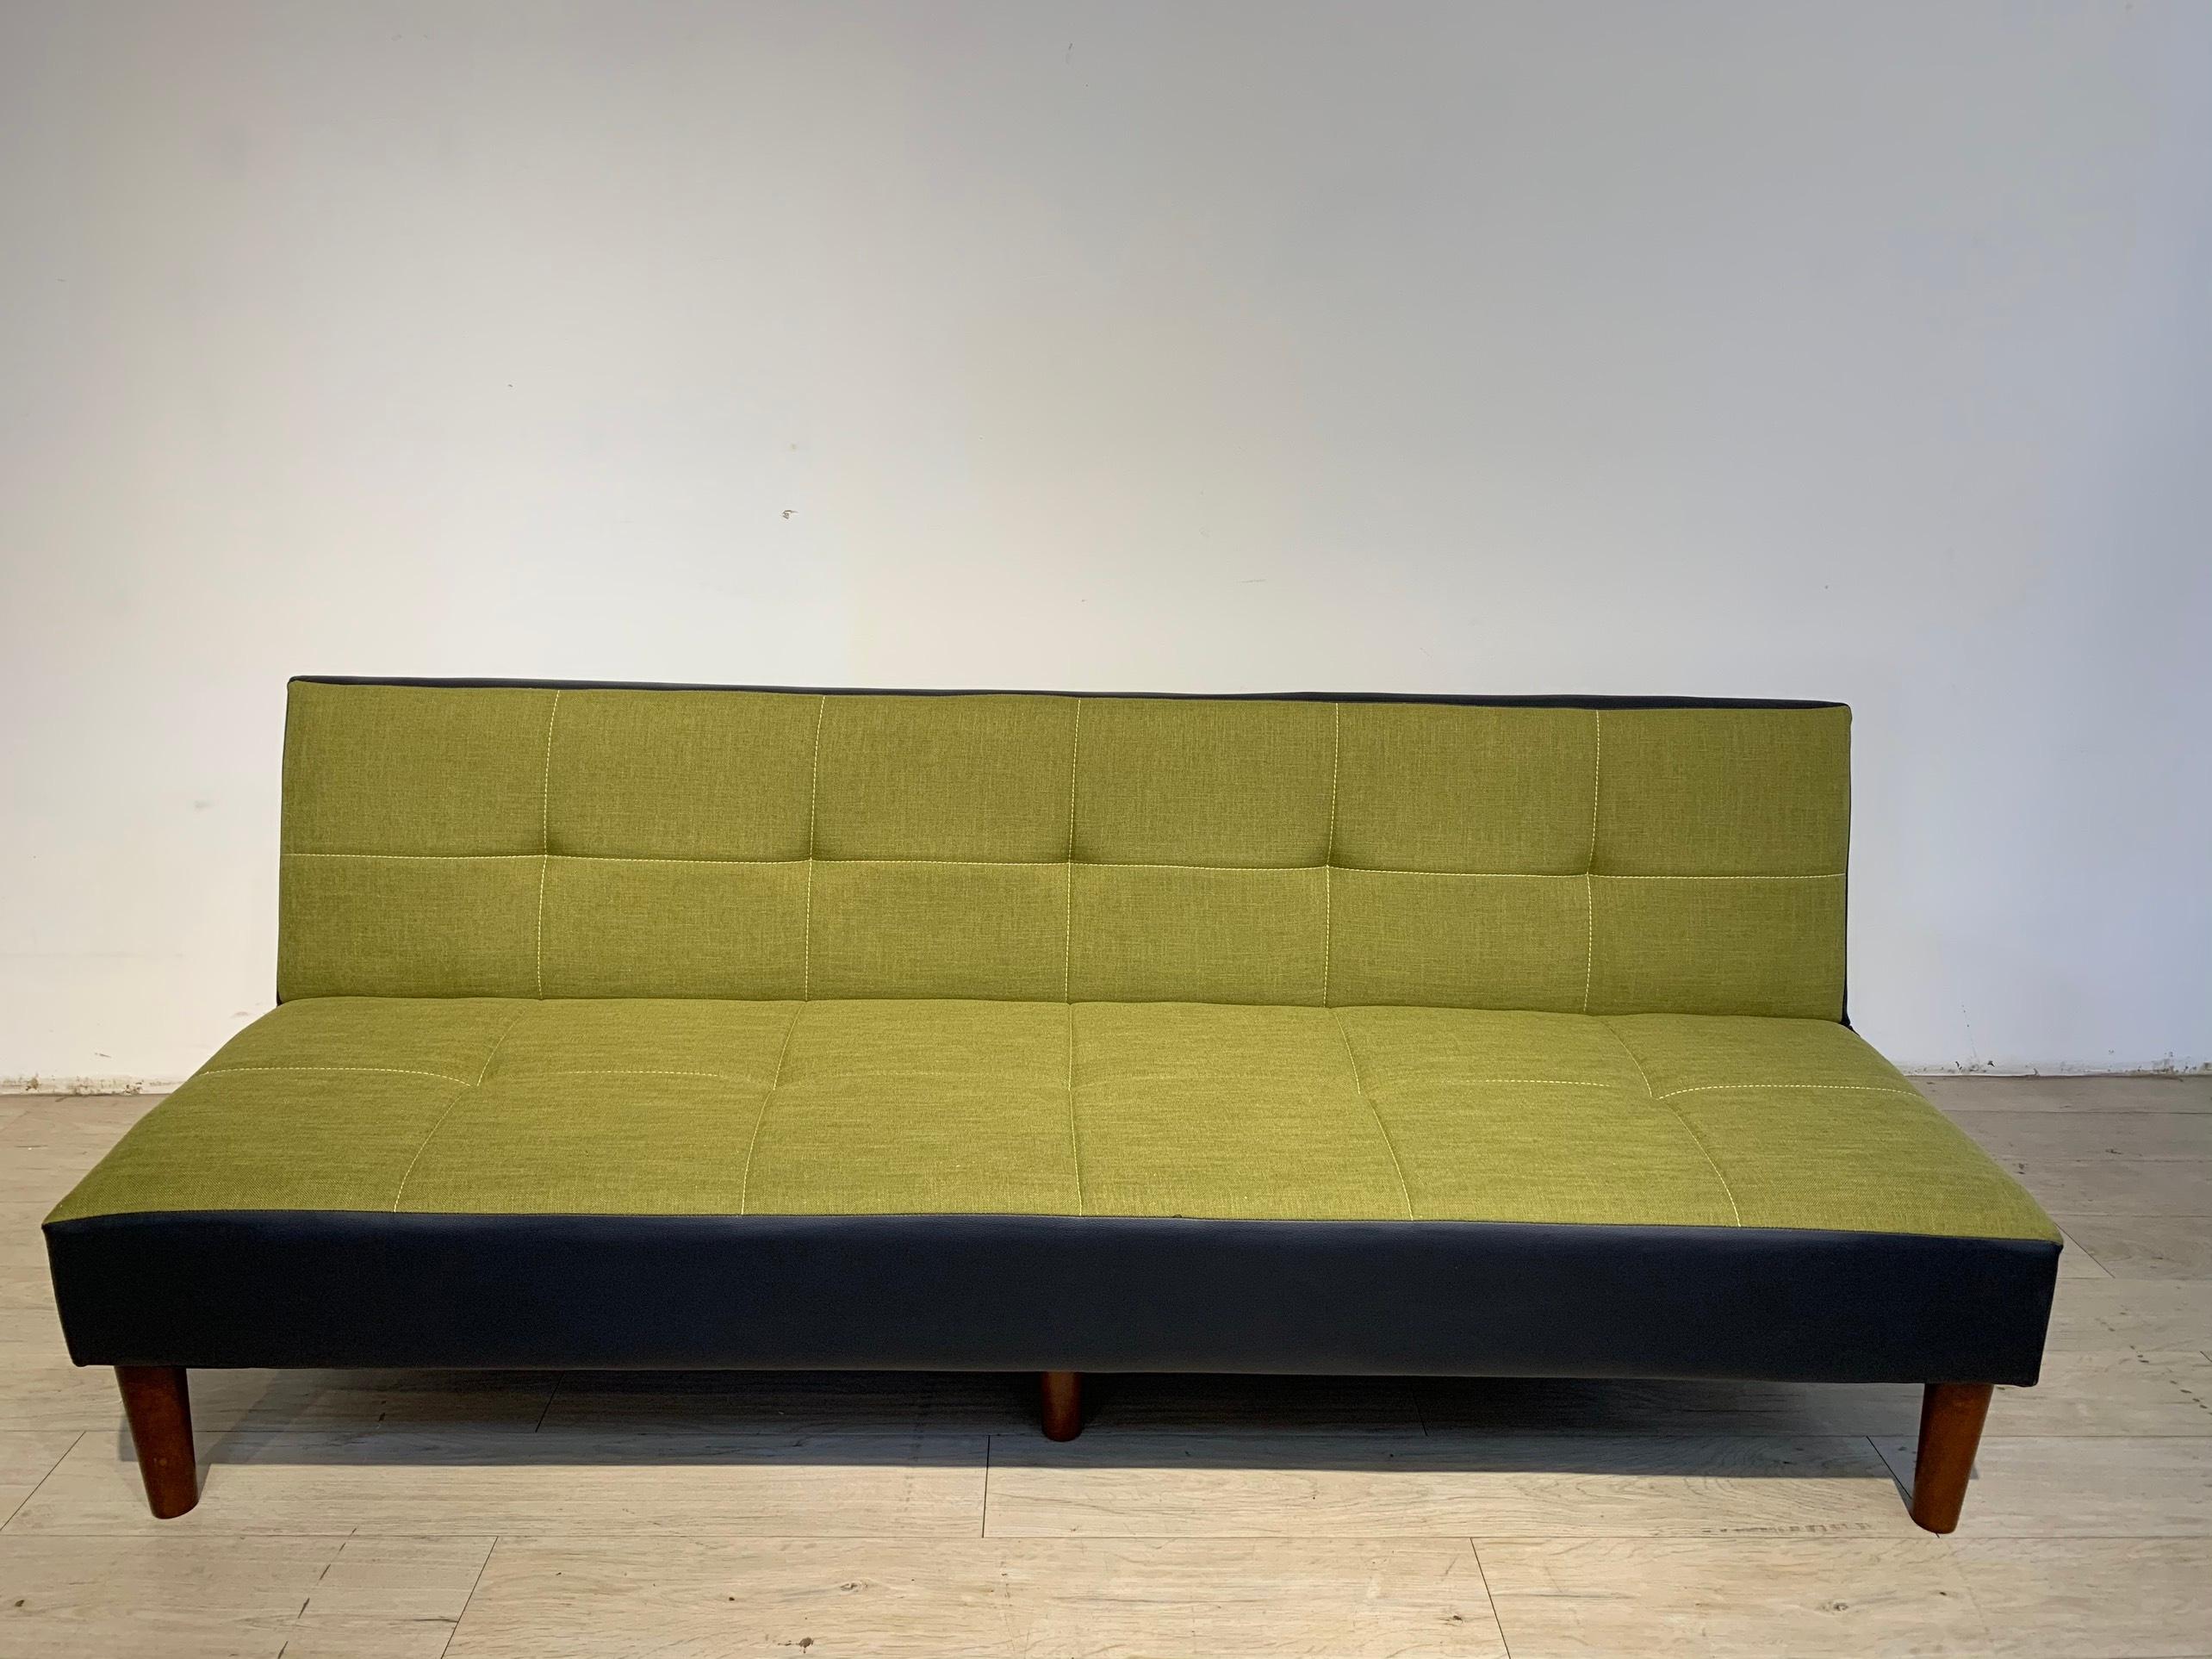 Sofa bed Juno sofa chân gỗ màu xám, đỏ, xanh lá